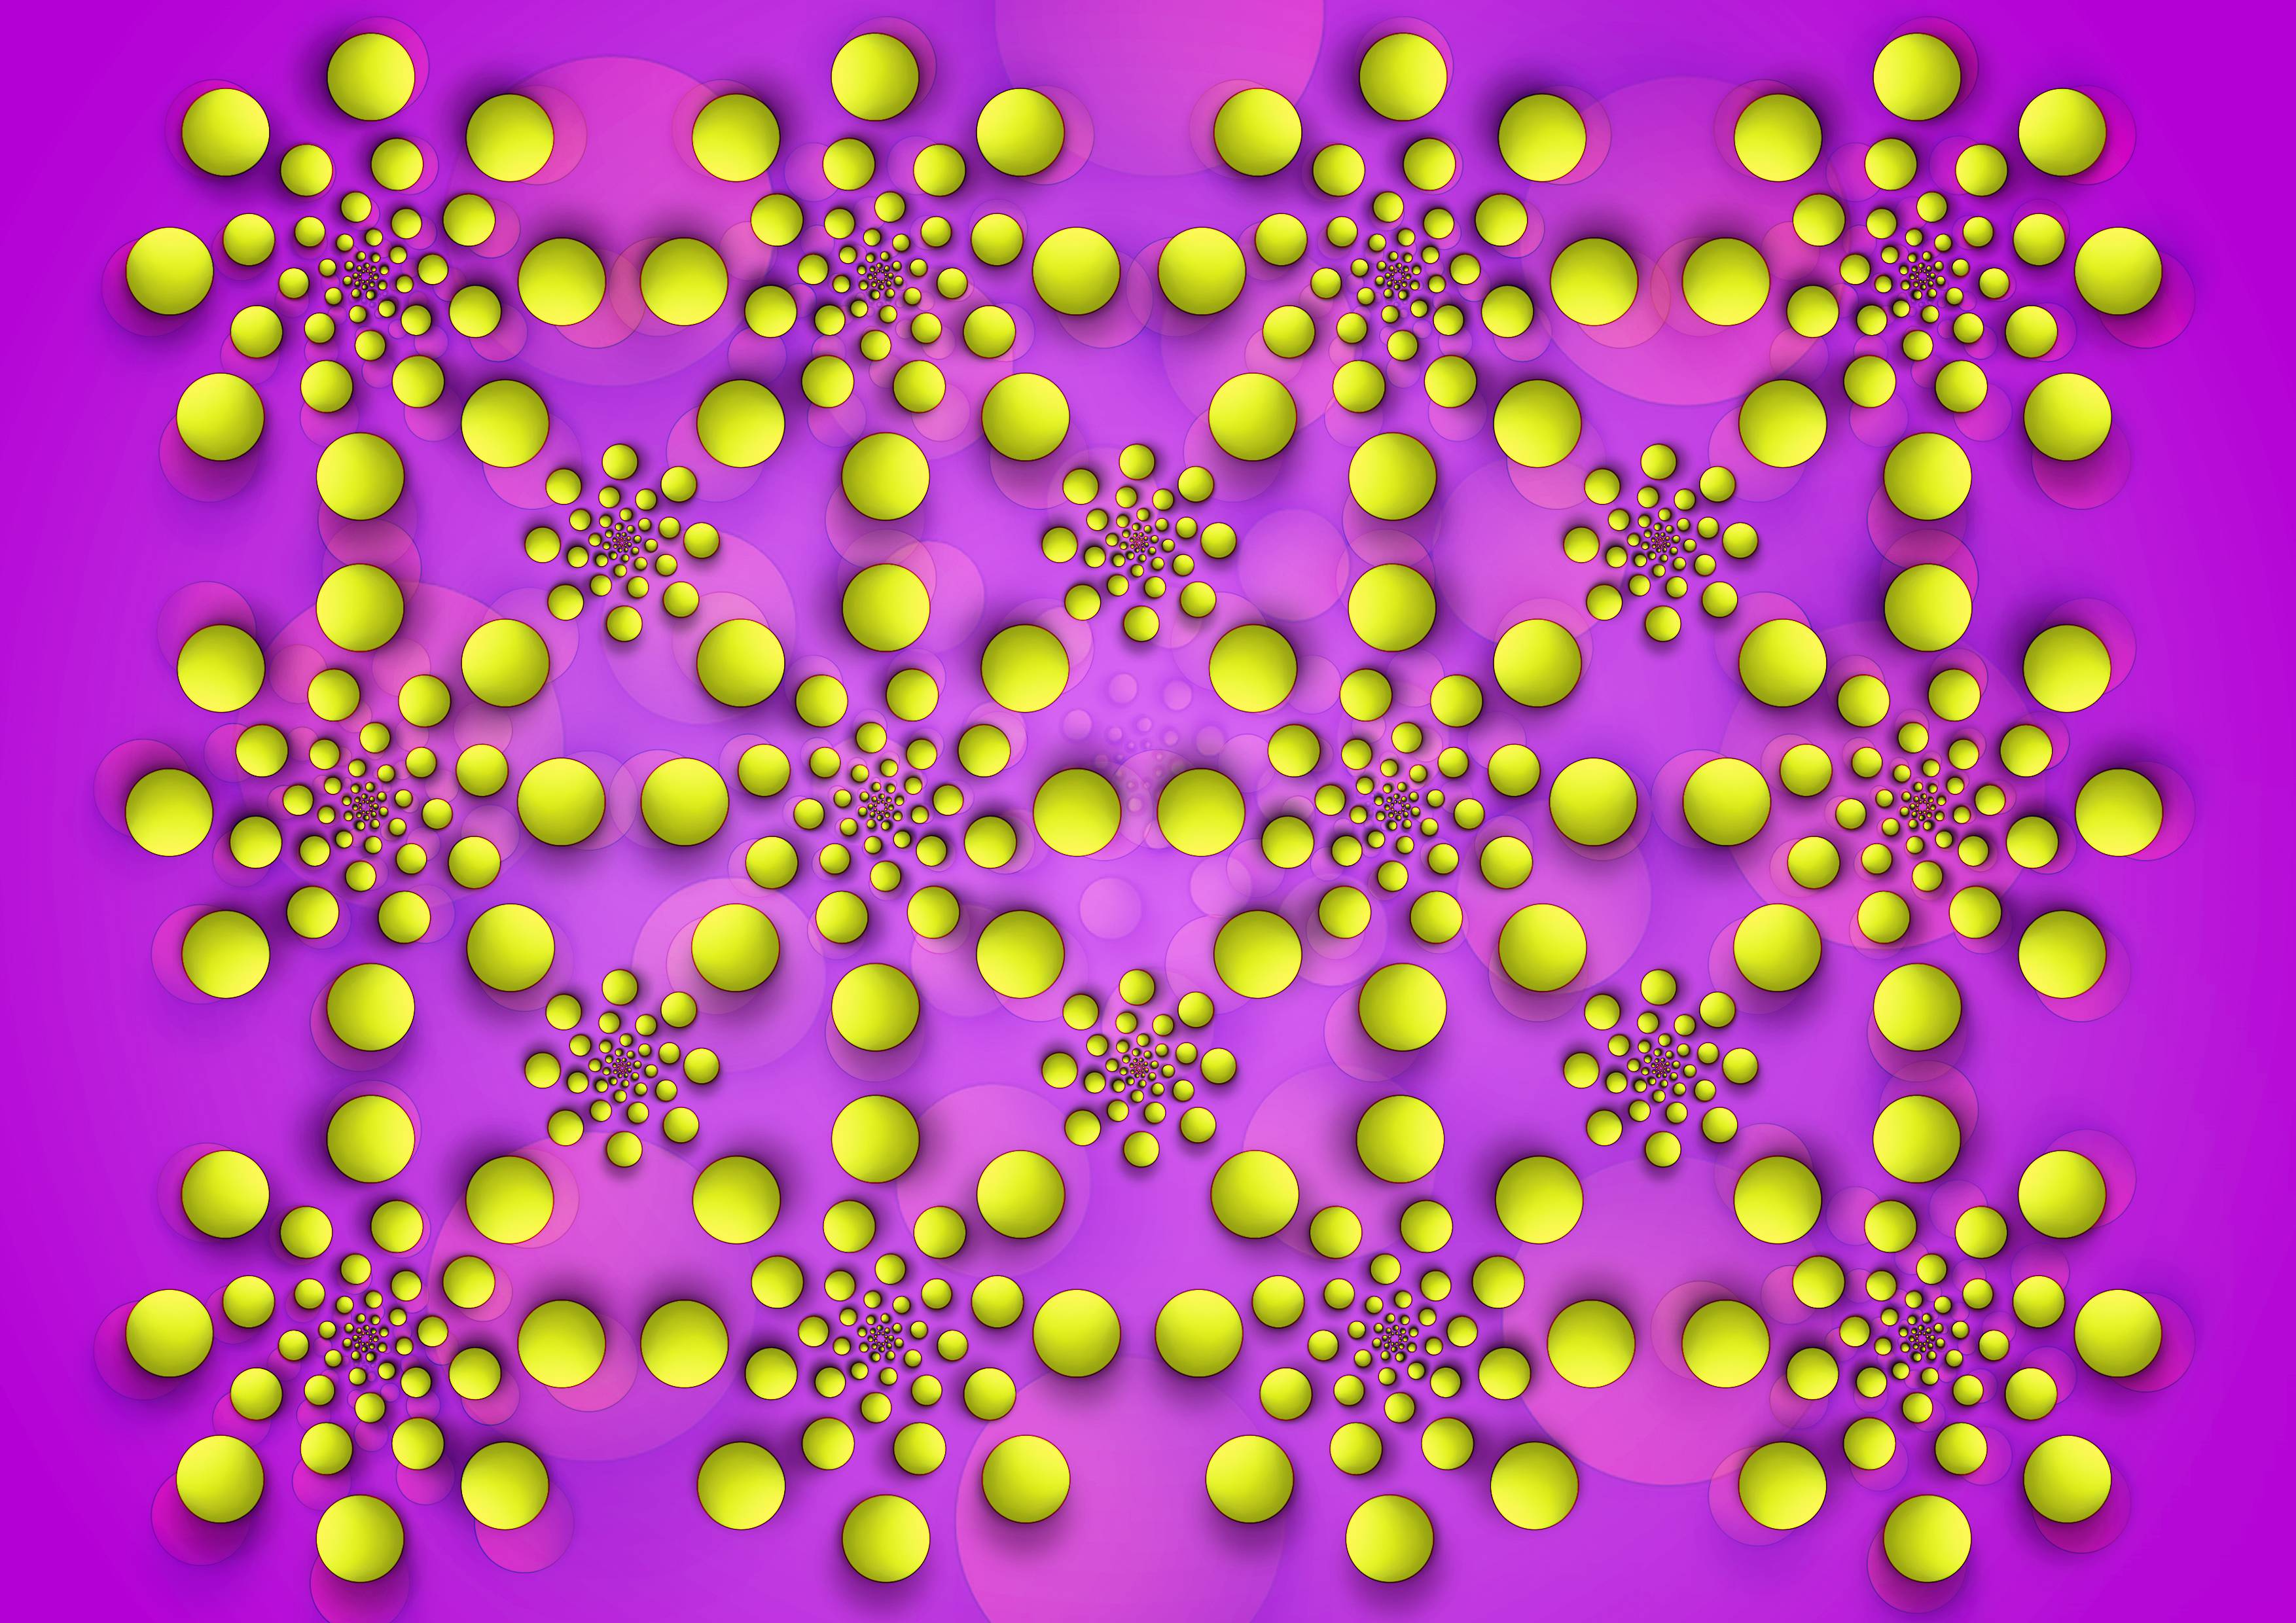 Hypnotic Spinning Spiral Optical Illusion Wallpaper taken